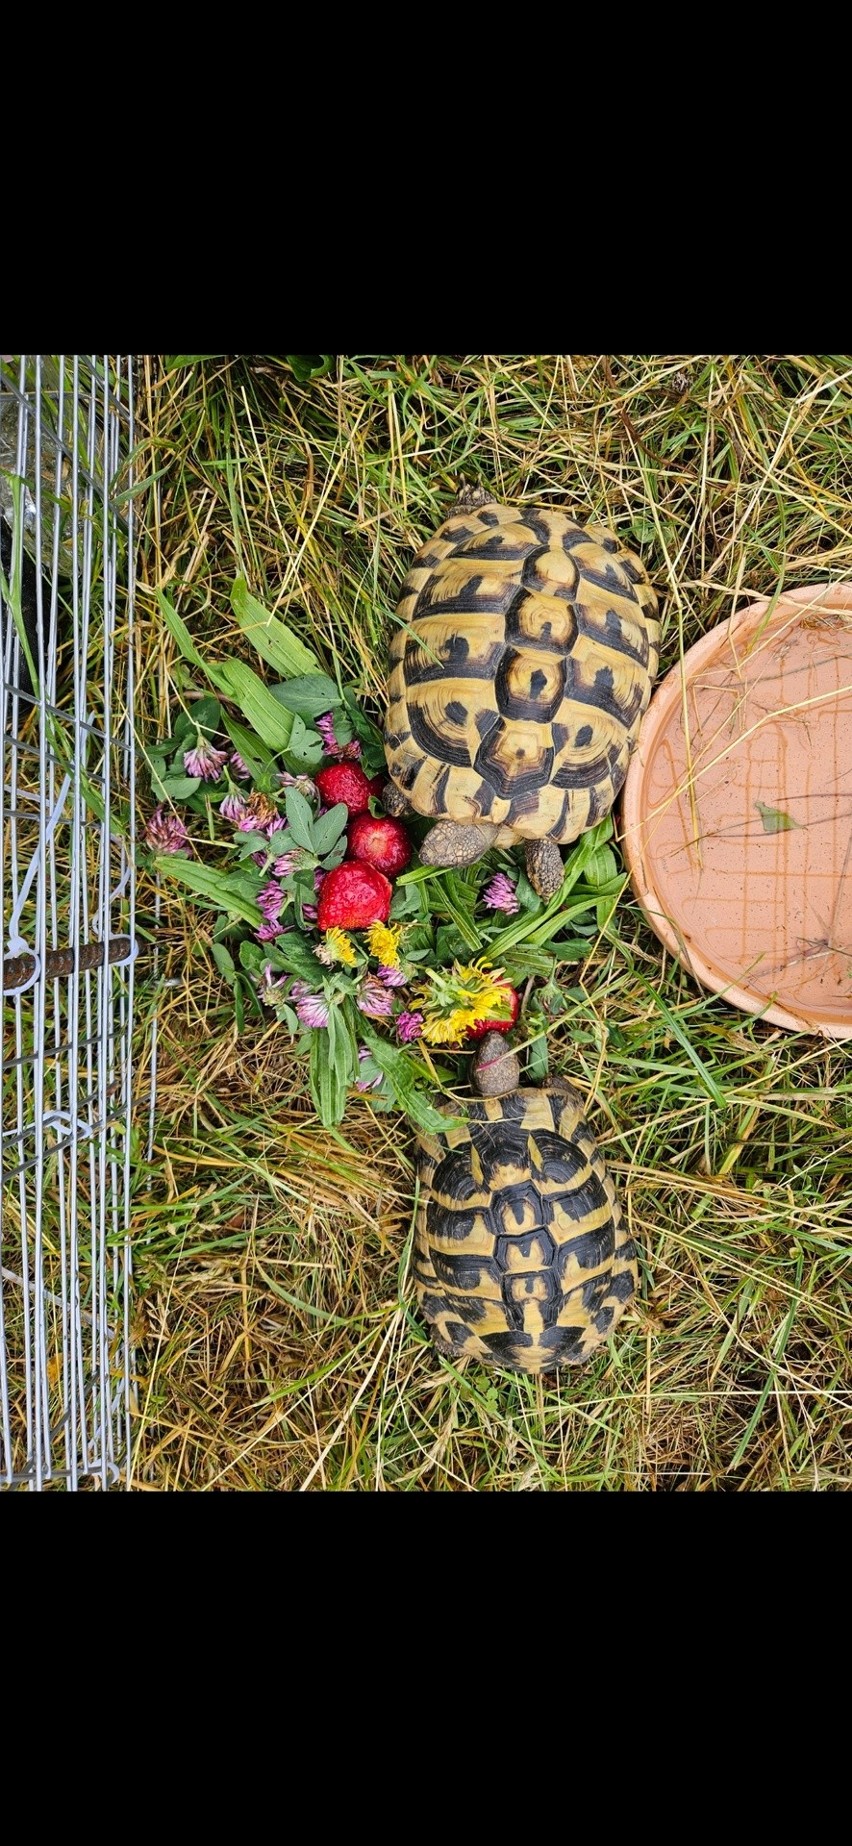 Łupem złodzieja padły dwa żółwie. Właściciele proszą o pomoc w ich odnalezieniu i oferują sporą nagrodę